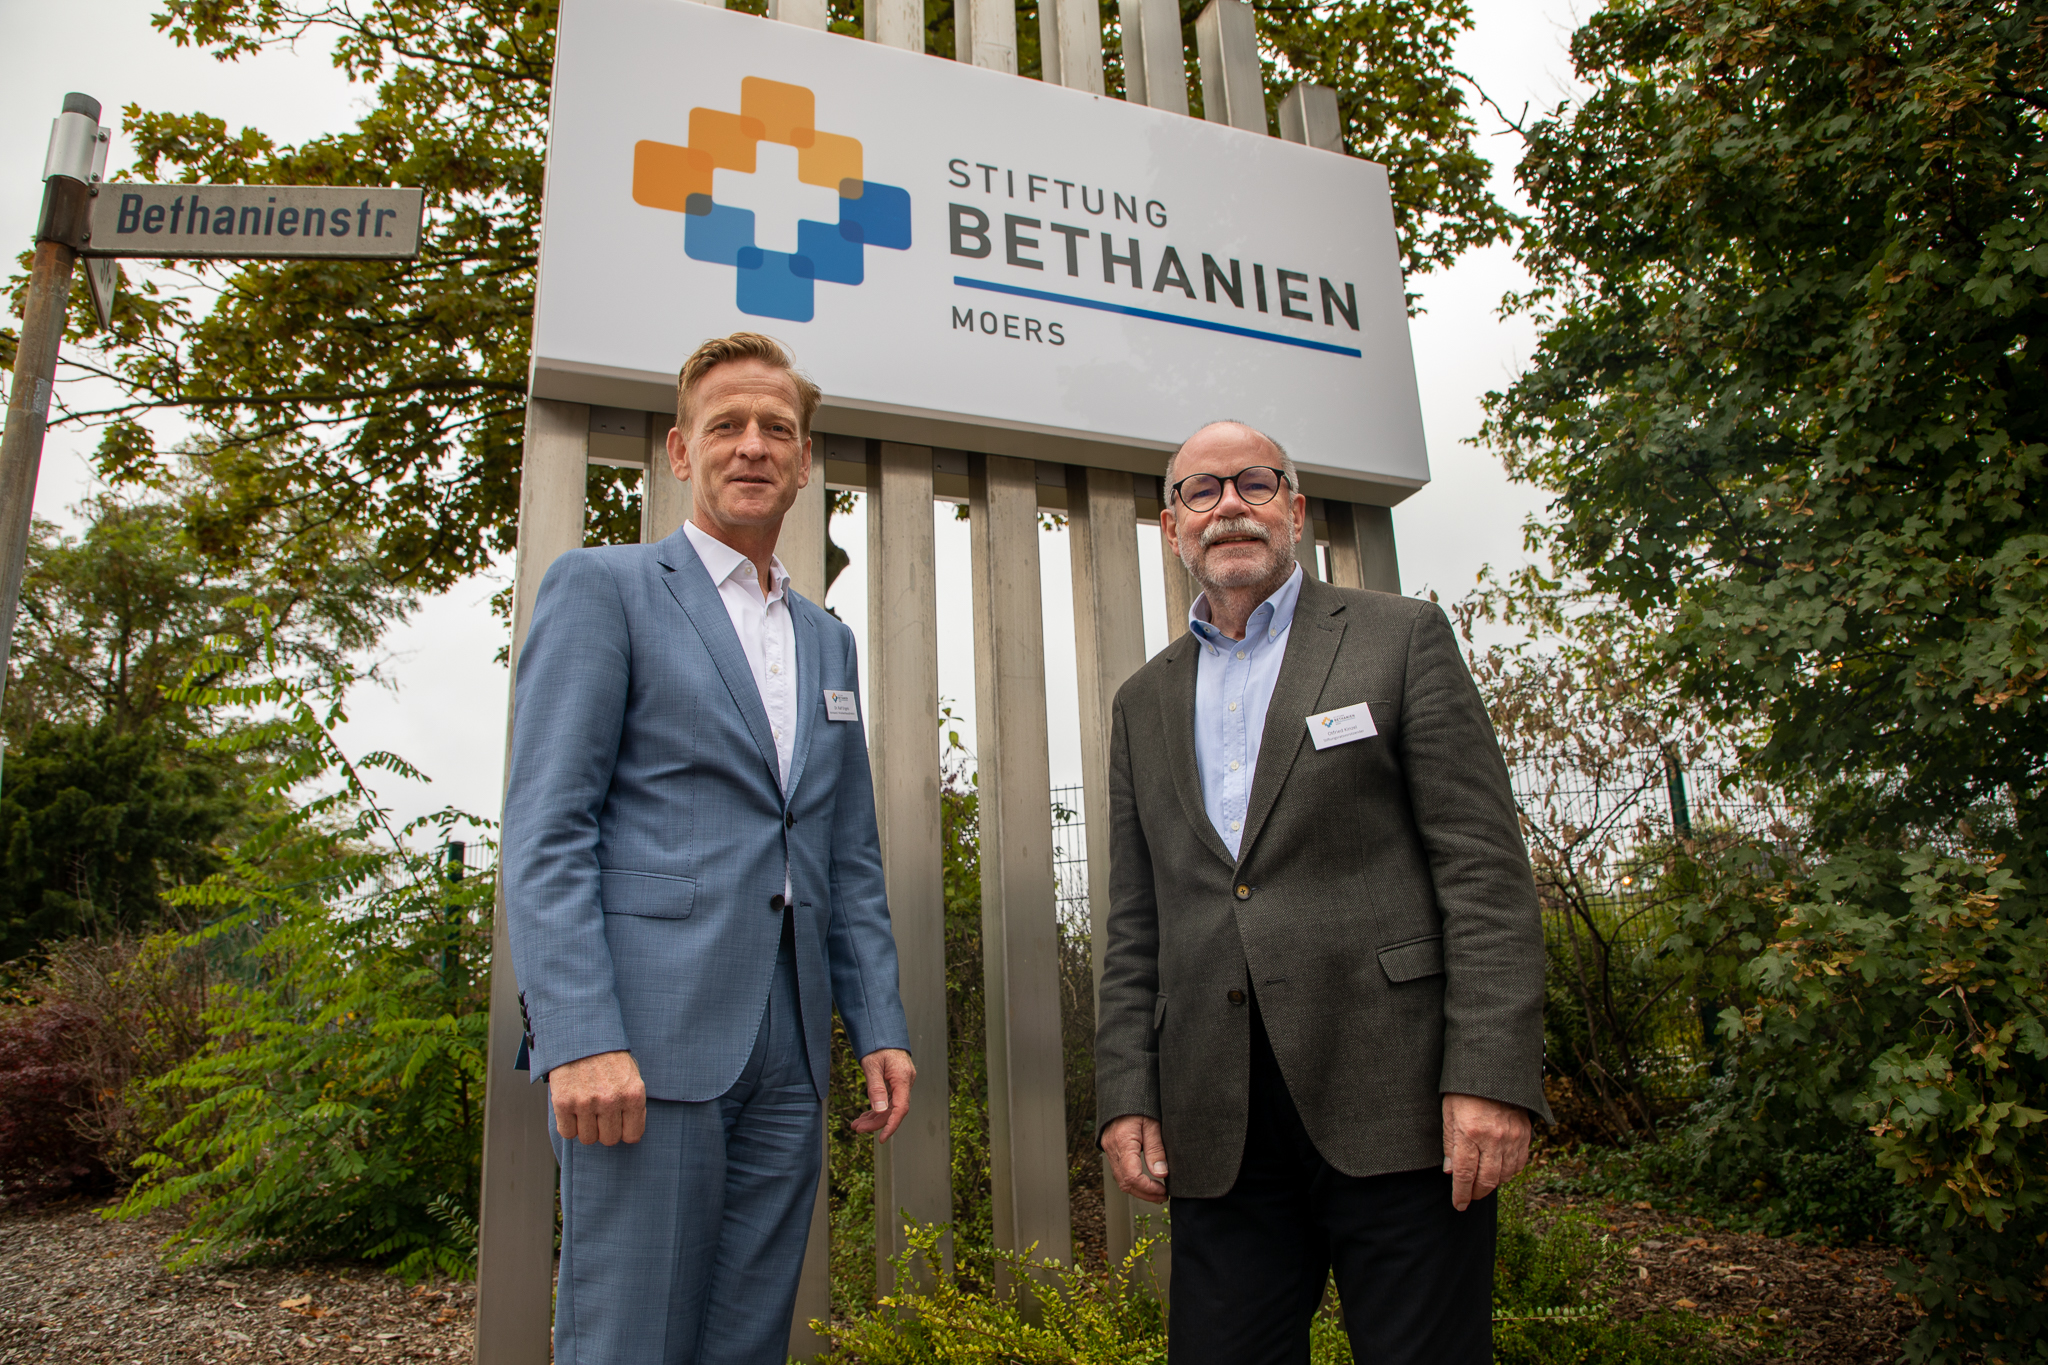 Modernisierung der Marke Bethanien stellt verschiedene Stiftungsbereiche heraus und verleiht der fast 170-jährigen Moerser Institution ein neues Gewand